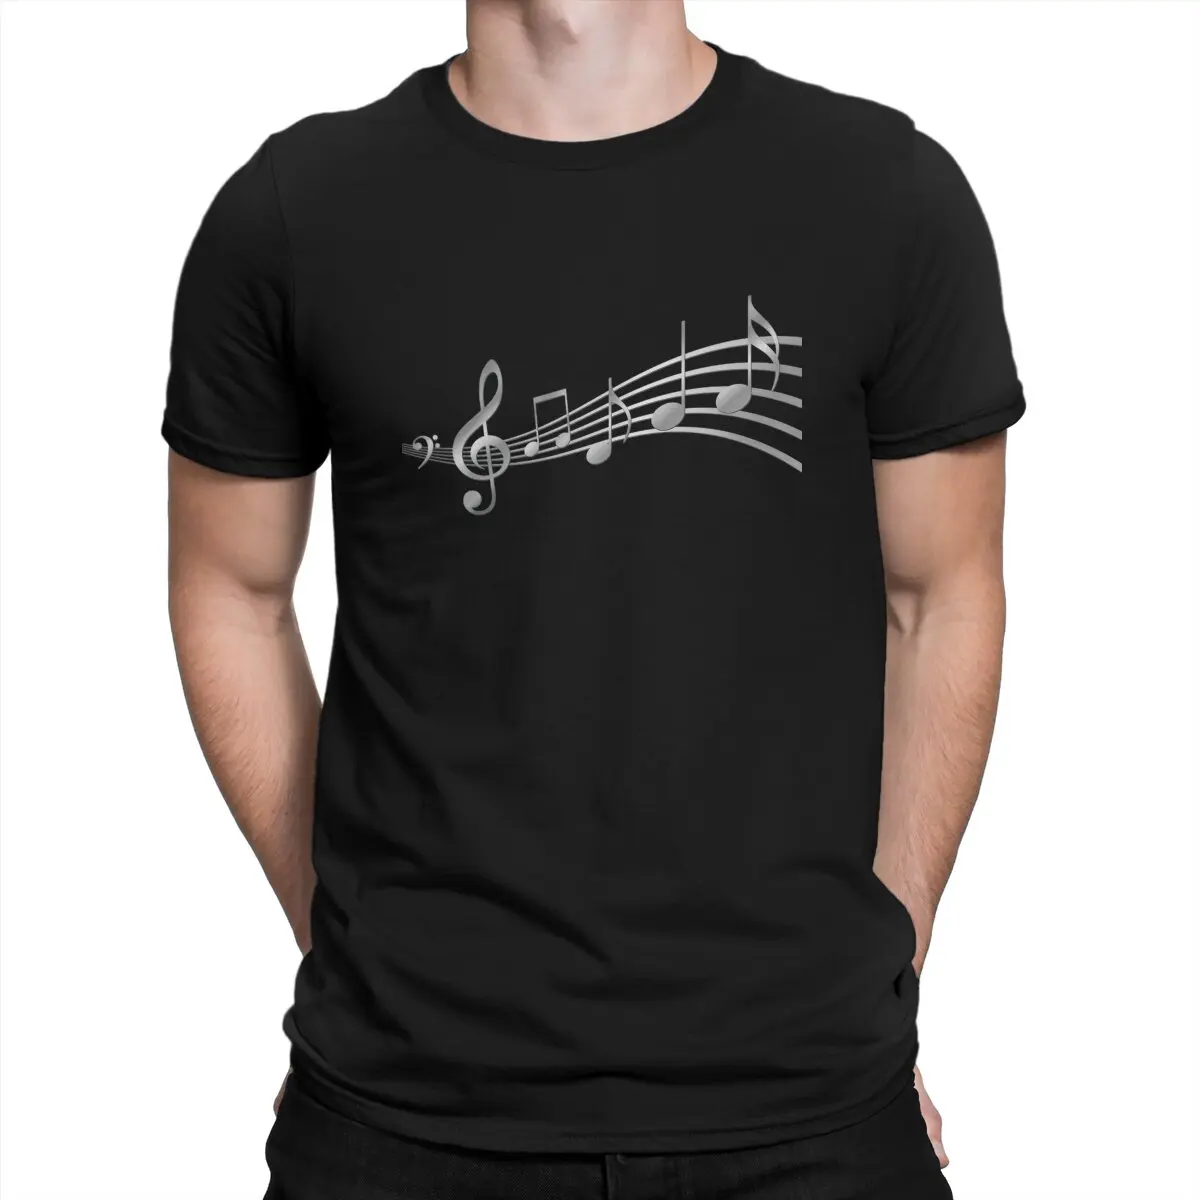 

Уникальная футболка play2 _ x4, футболка для отдыха с изображением гитары, рок, новейшая футболка для взрослых